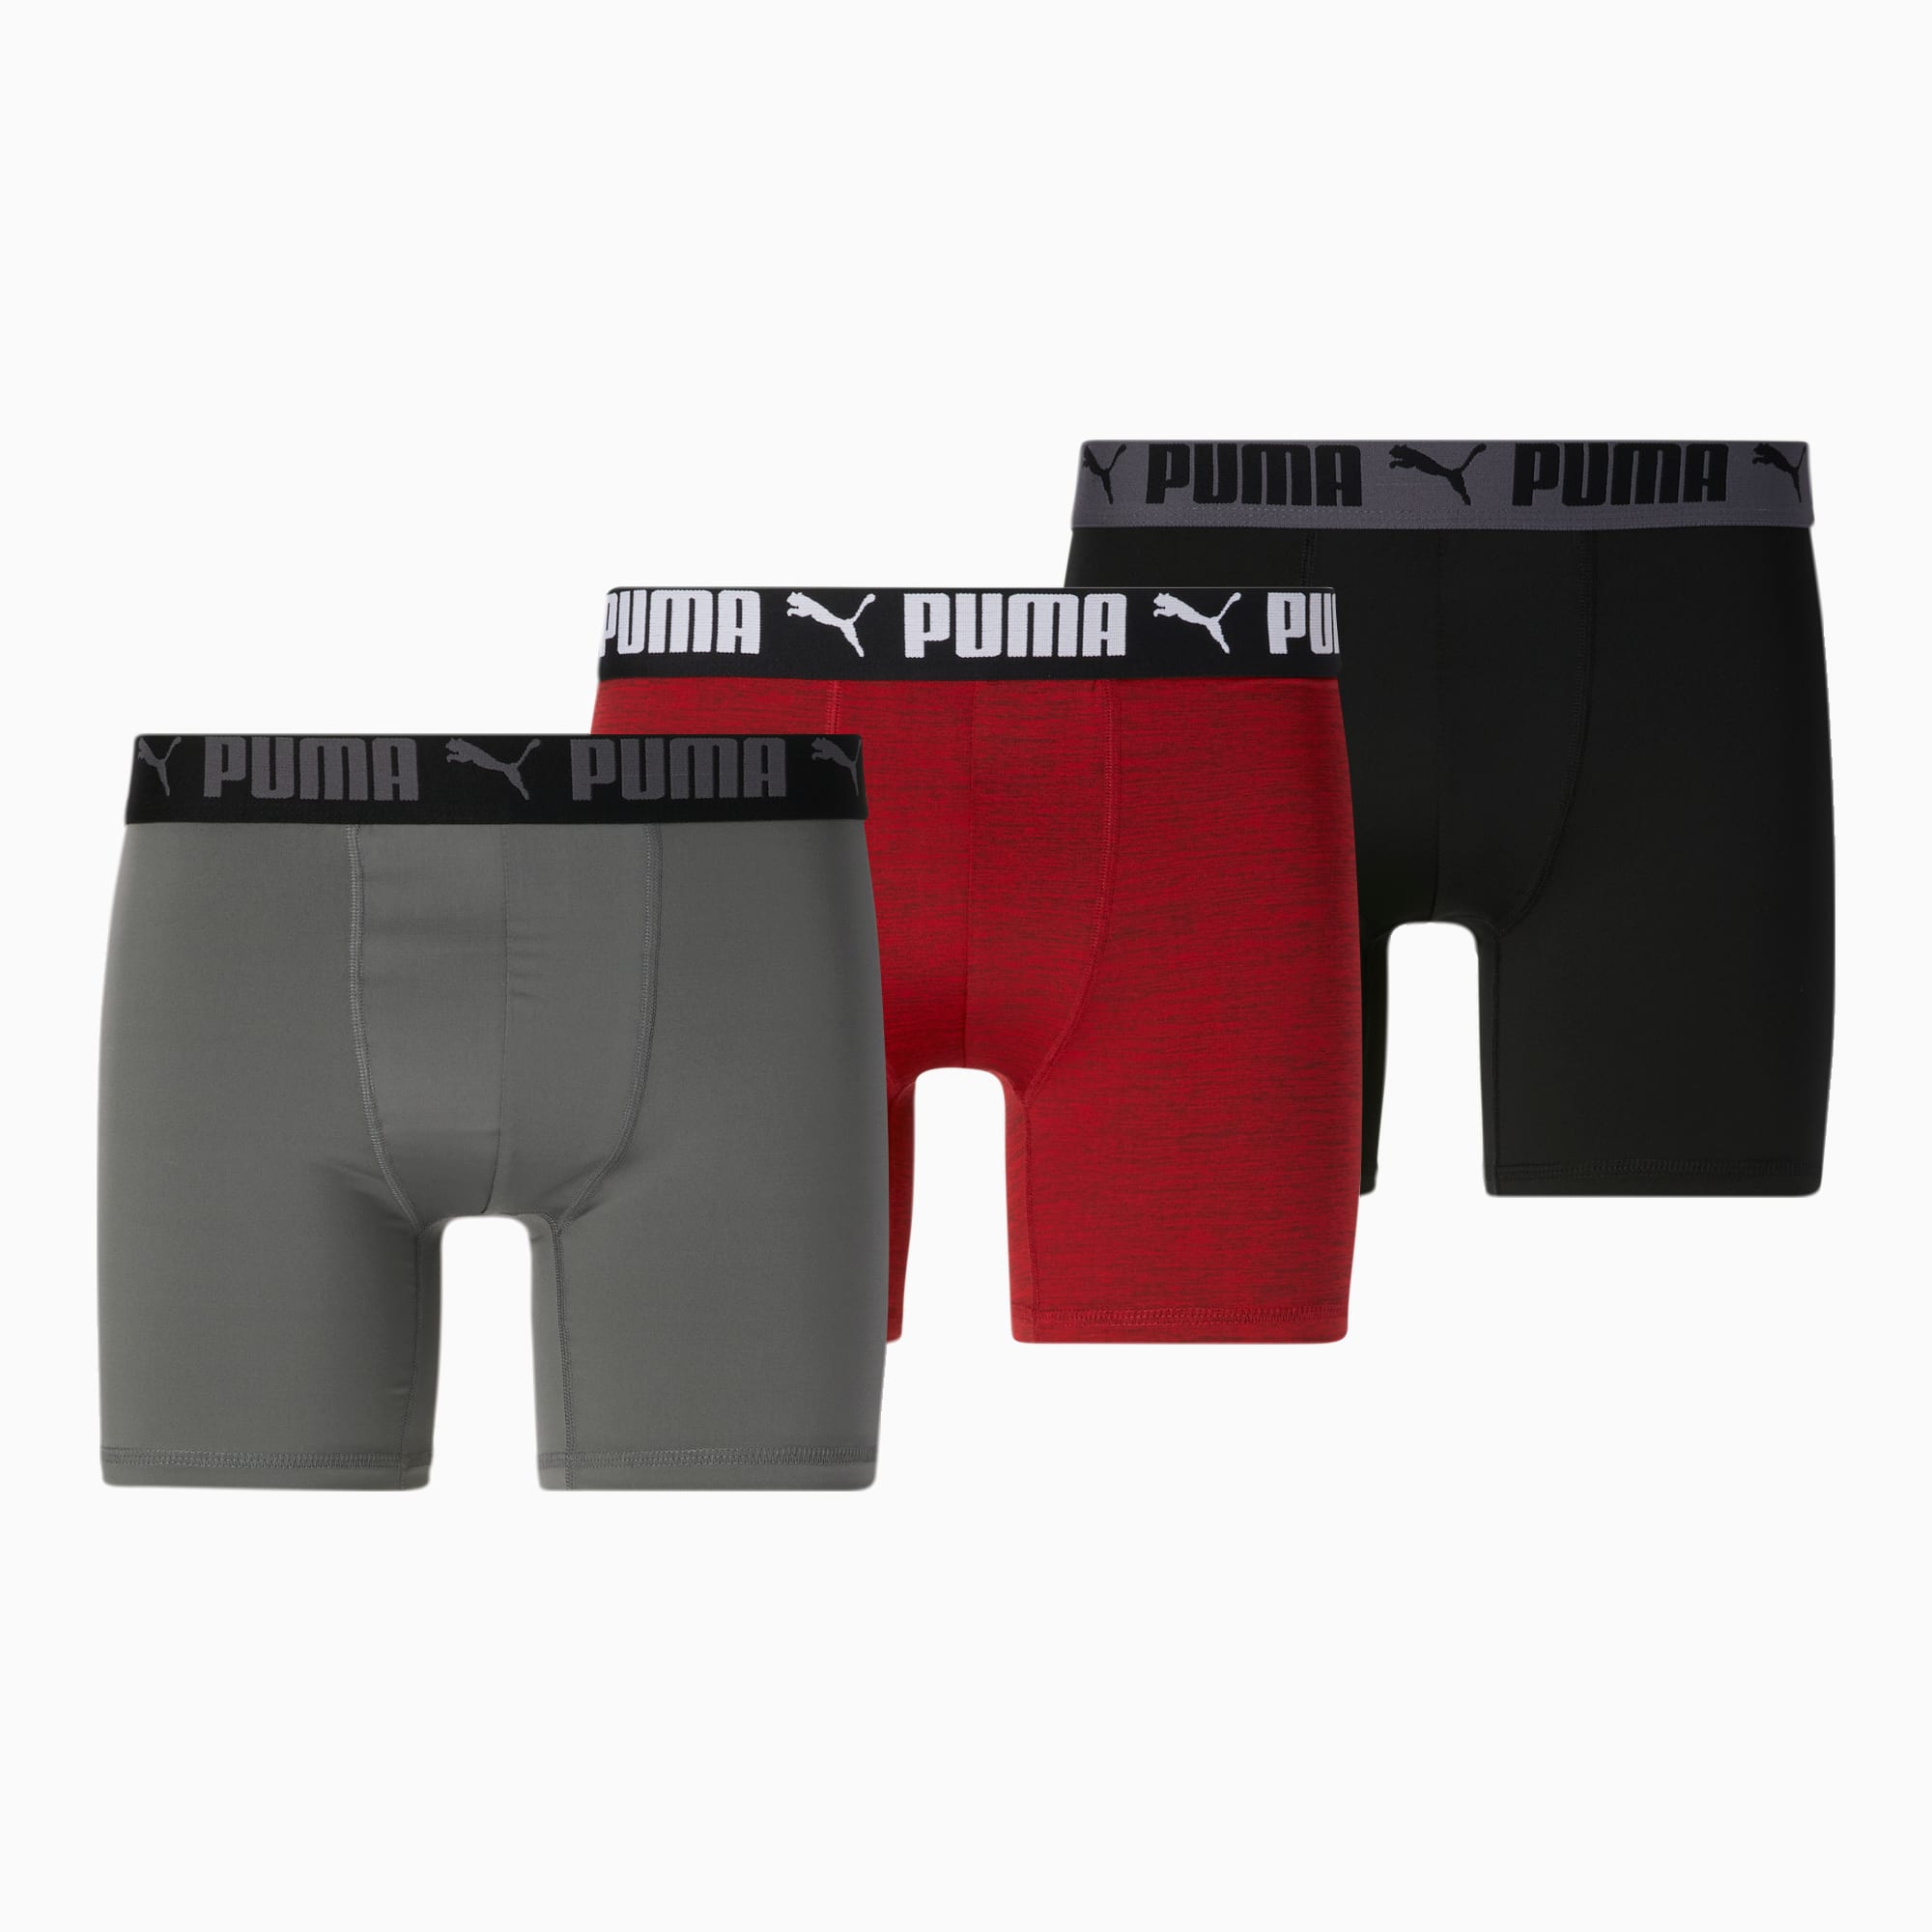 Puma Men's Performance Boxer Briefs Large 3-Pack Sport Style Black/Blue/Tie  Dye